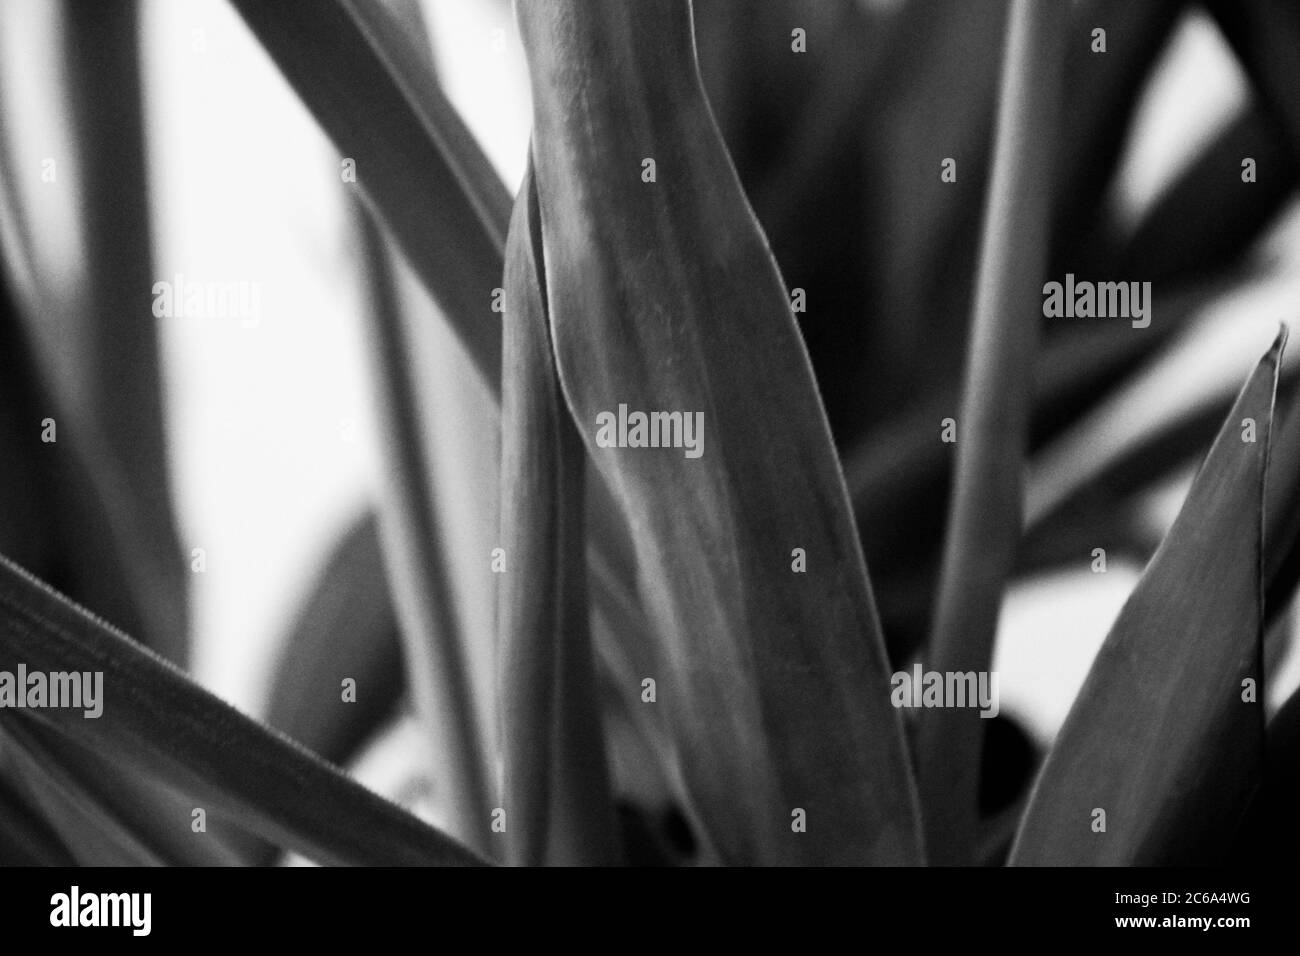 Il a des plantes ornementales comme l'aloe vera et des plantes à feuilles devant l'image noire et blanche. Banque D'Images